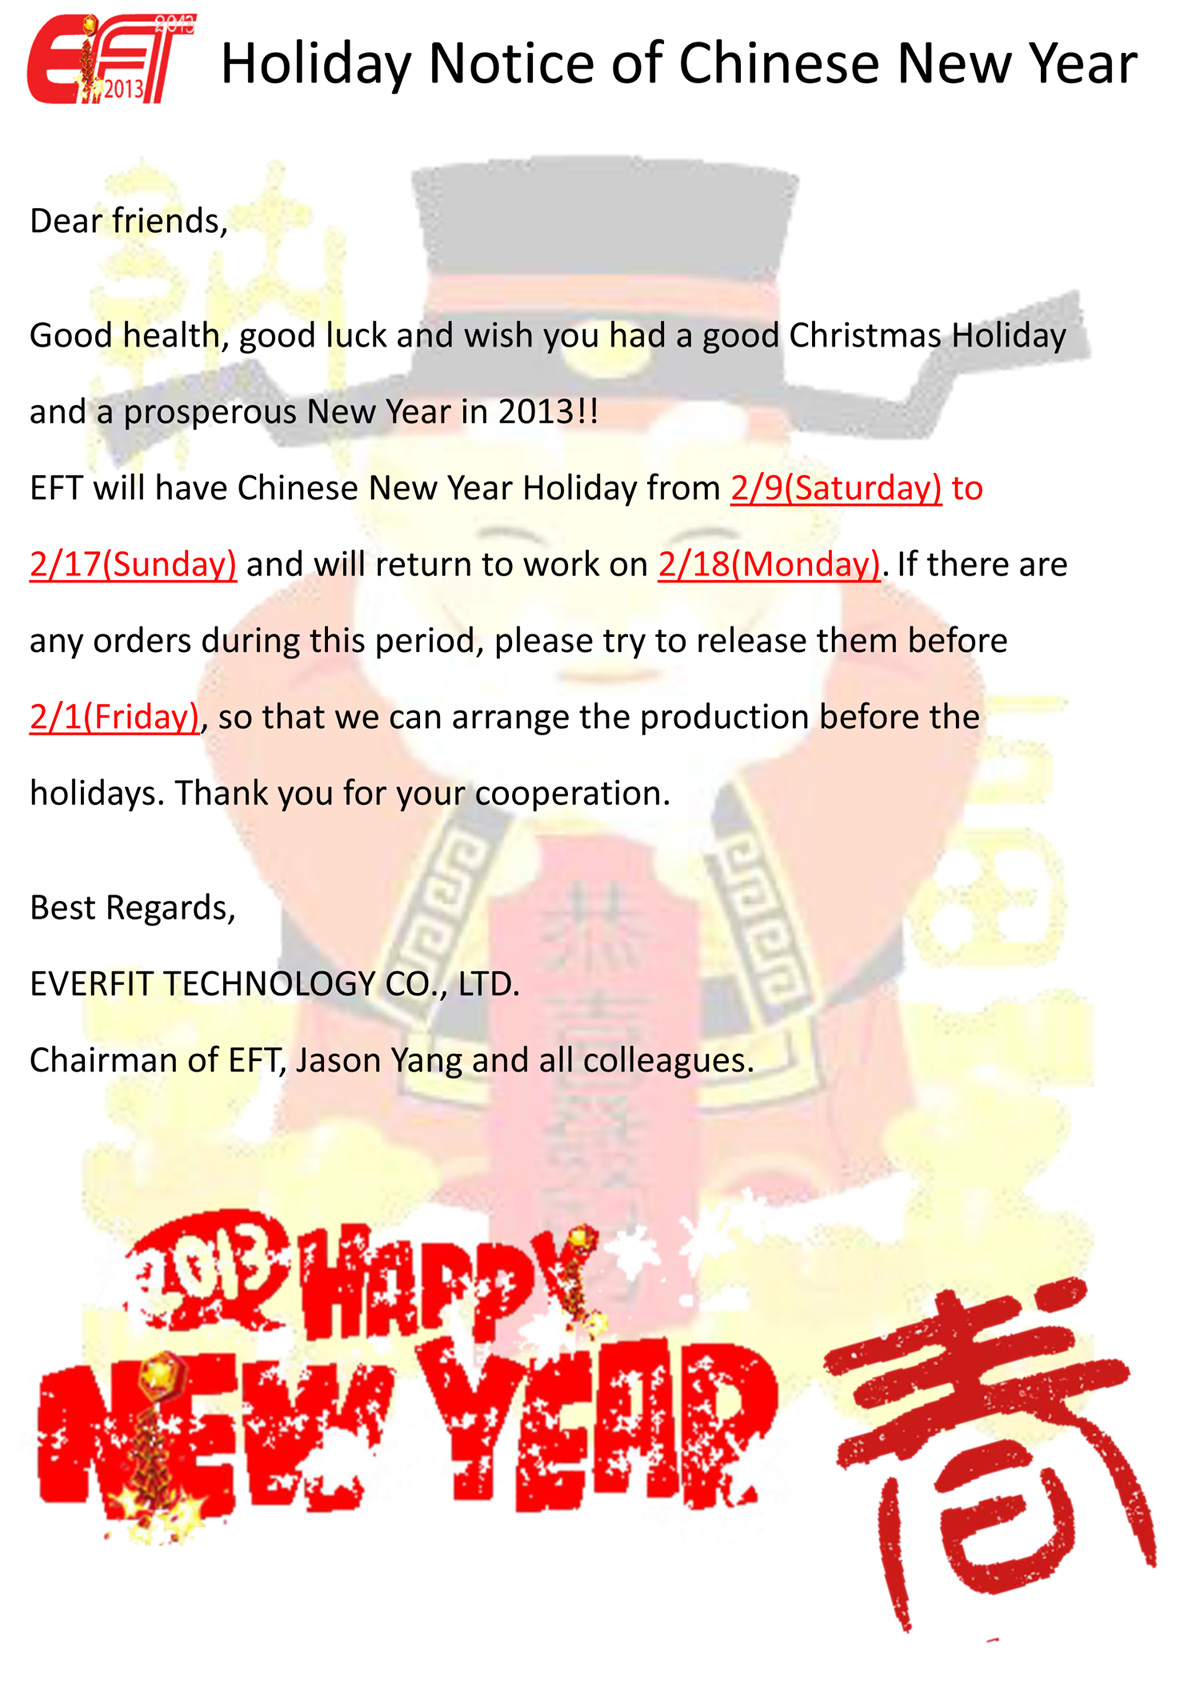 Feiertagsmitteilung zum chinesischen Neujahr